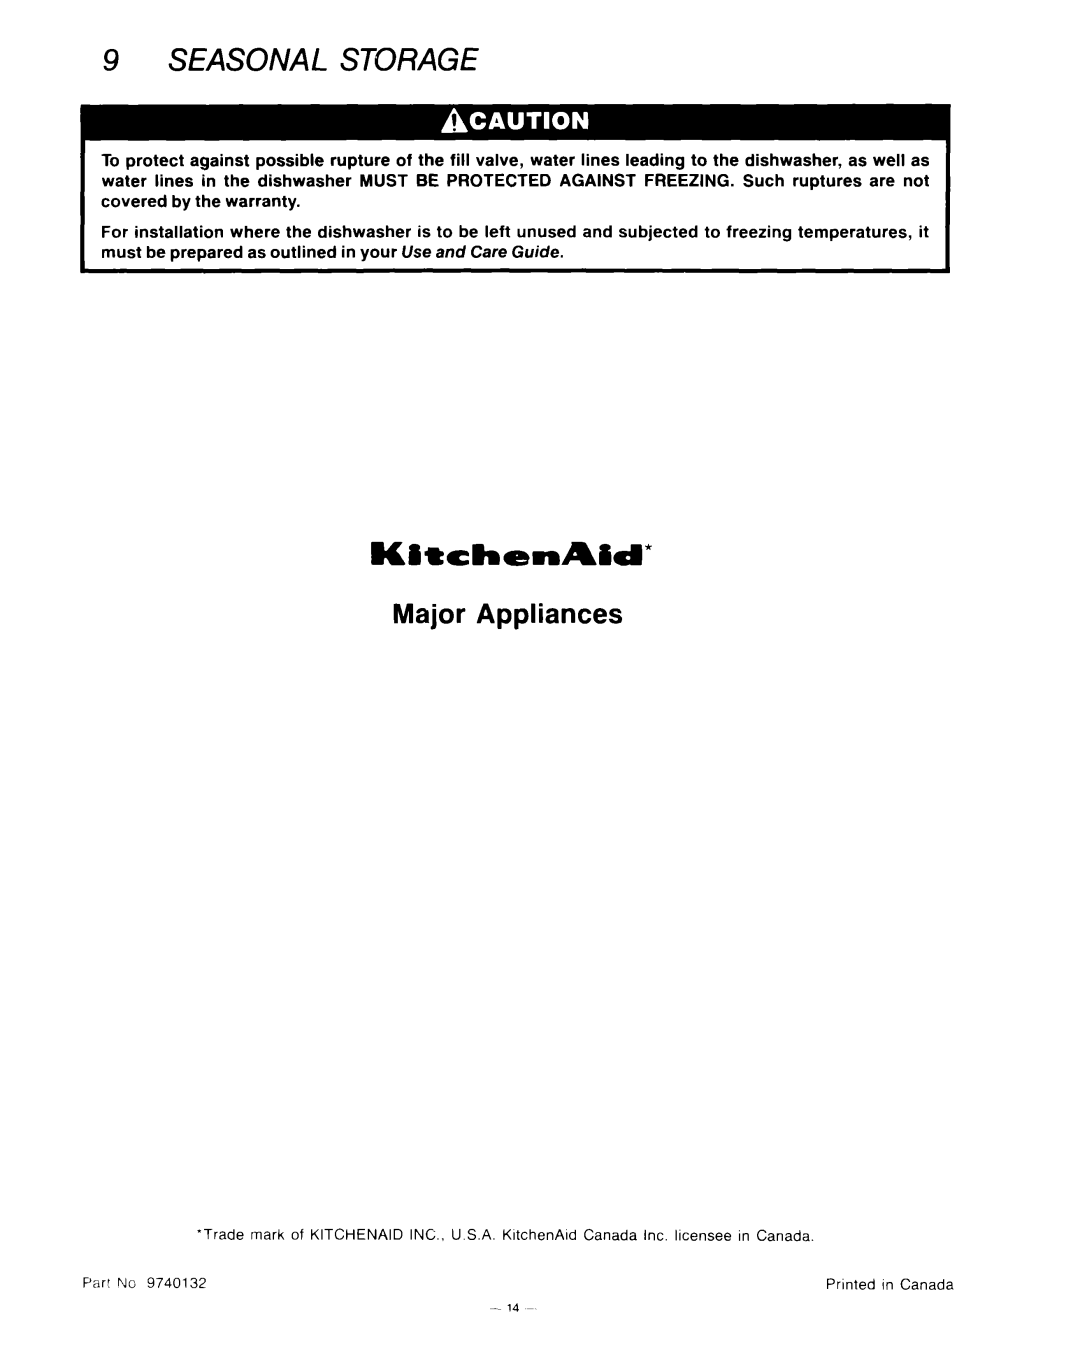 KitchenAid KUD-22 manual Seasonal Storage, KitthenAid, Major Appliances 